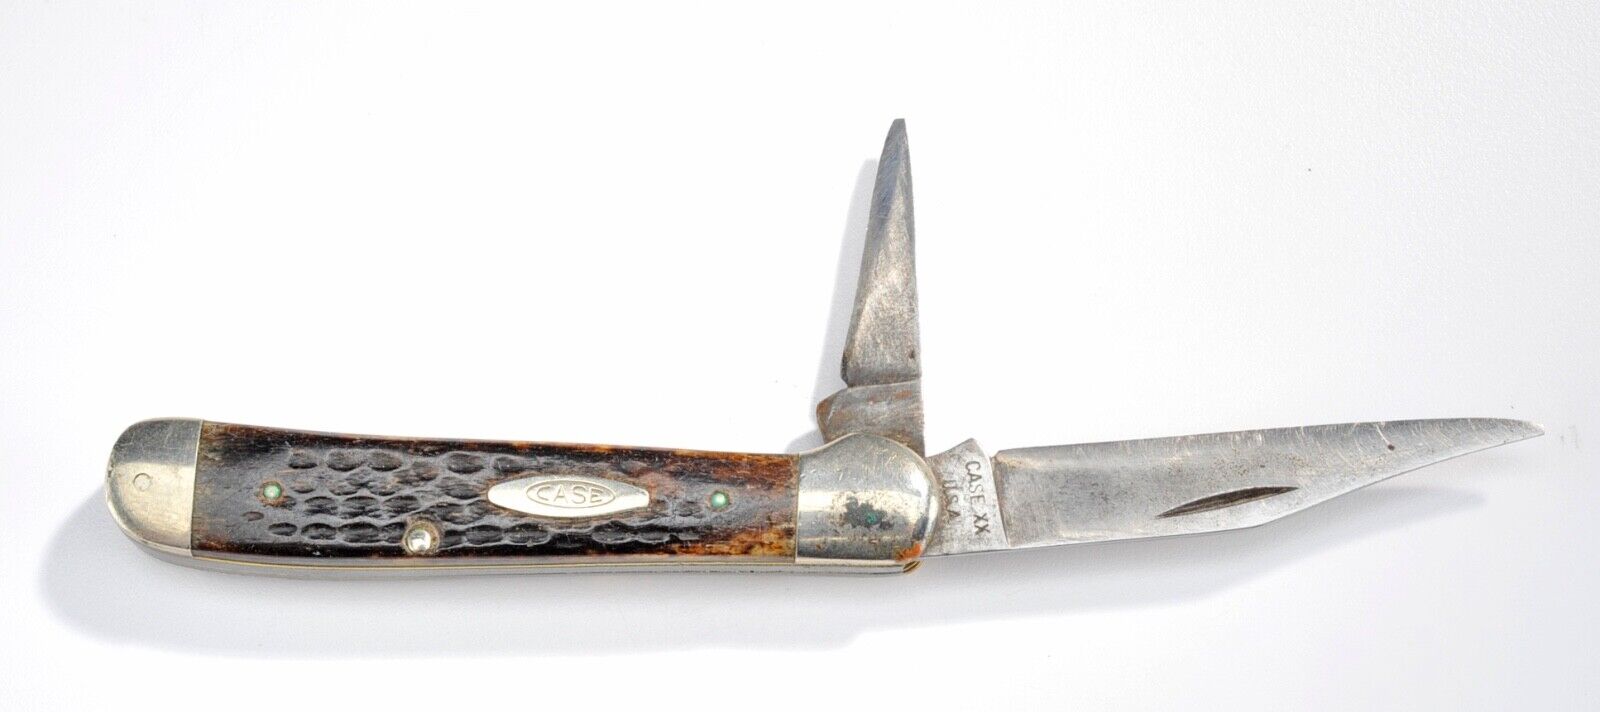 Vintage 1970's Case XX 6249 - 2 Blade Pocket Knife - Bone Handle